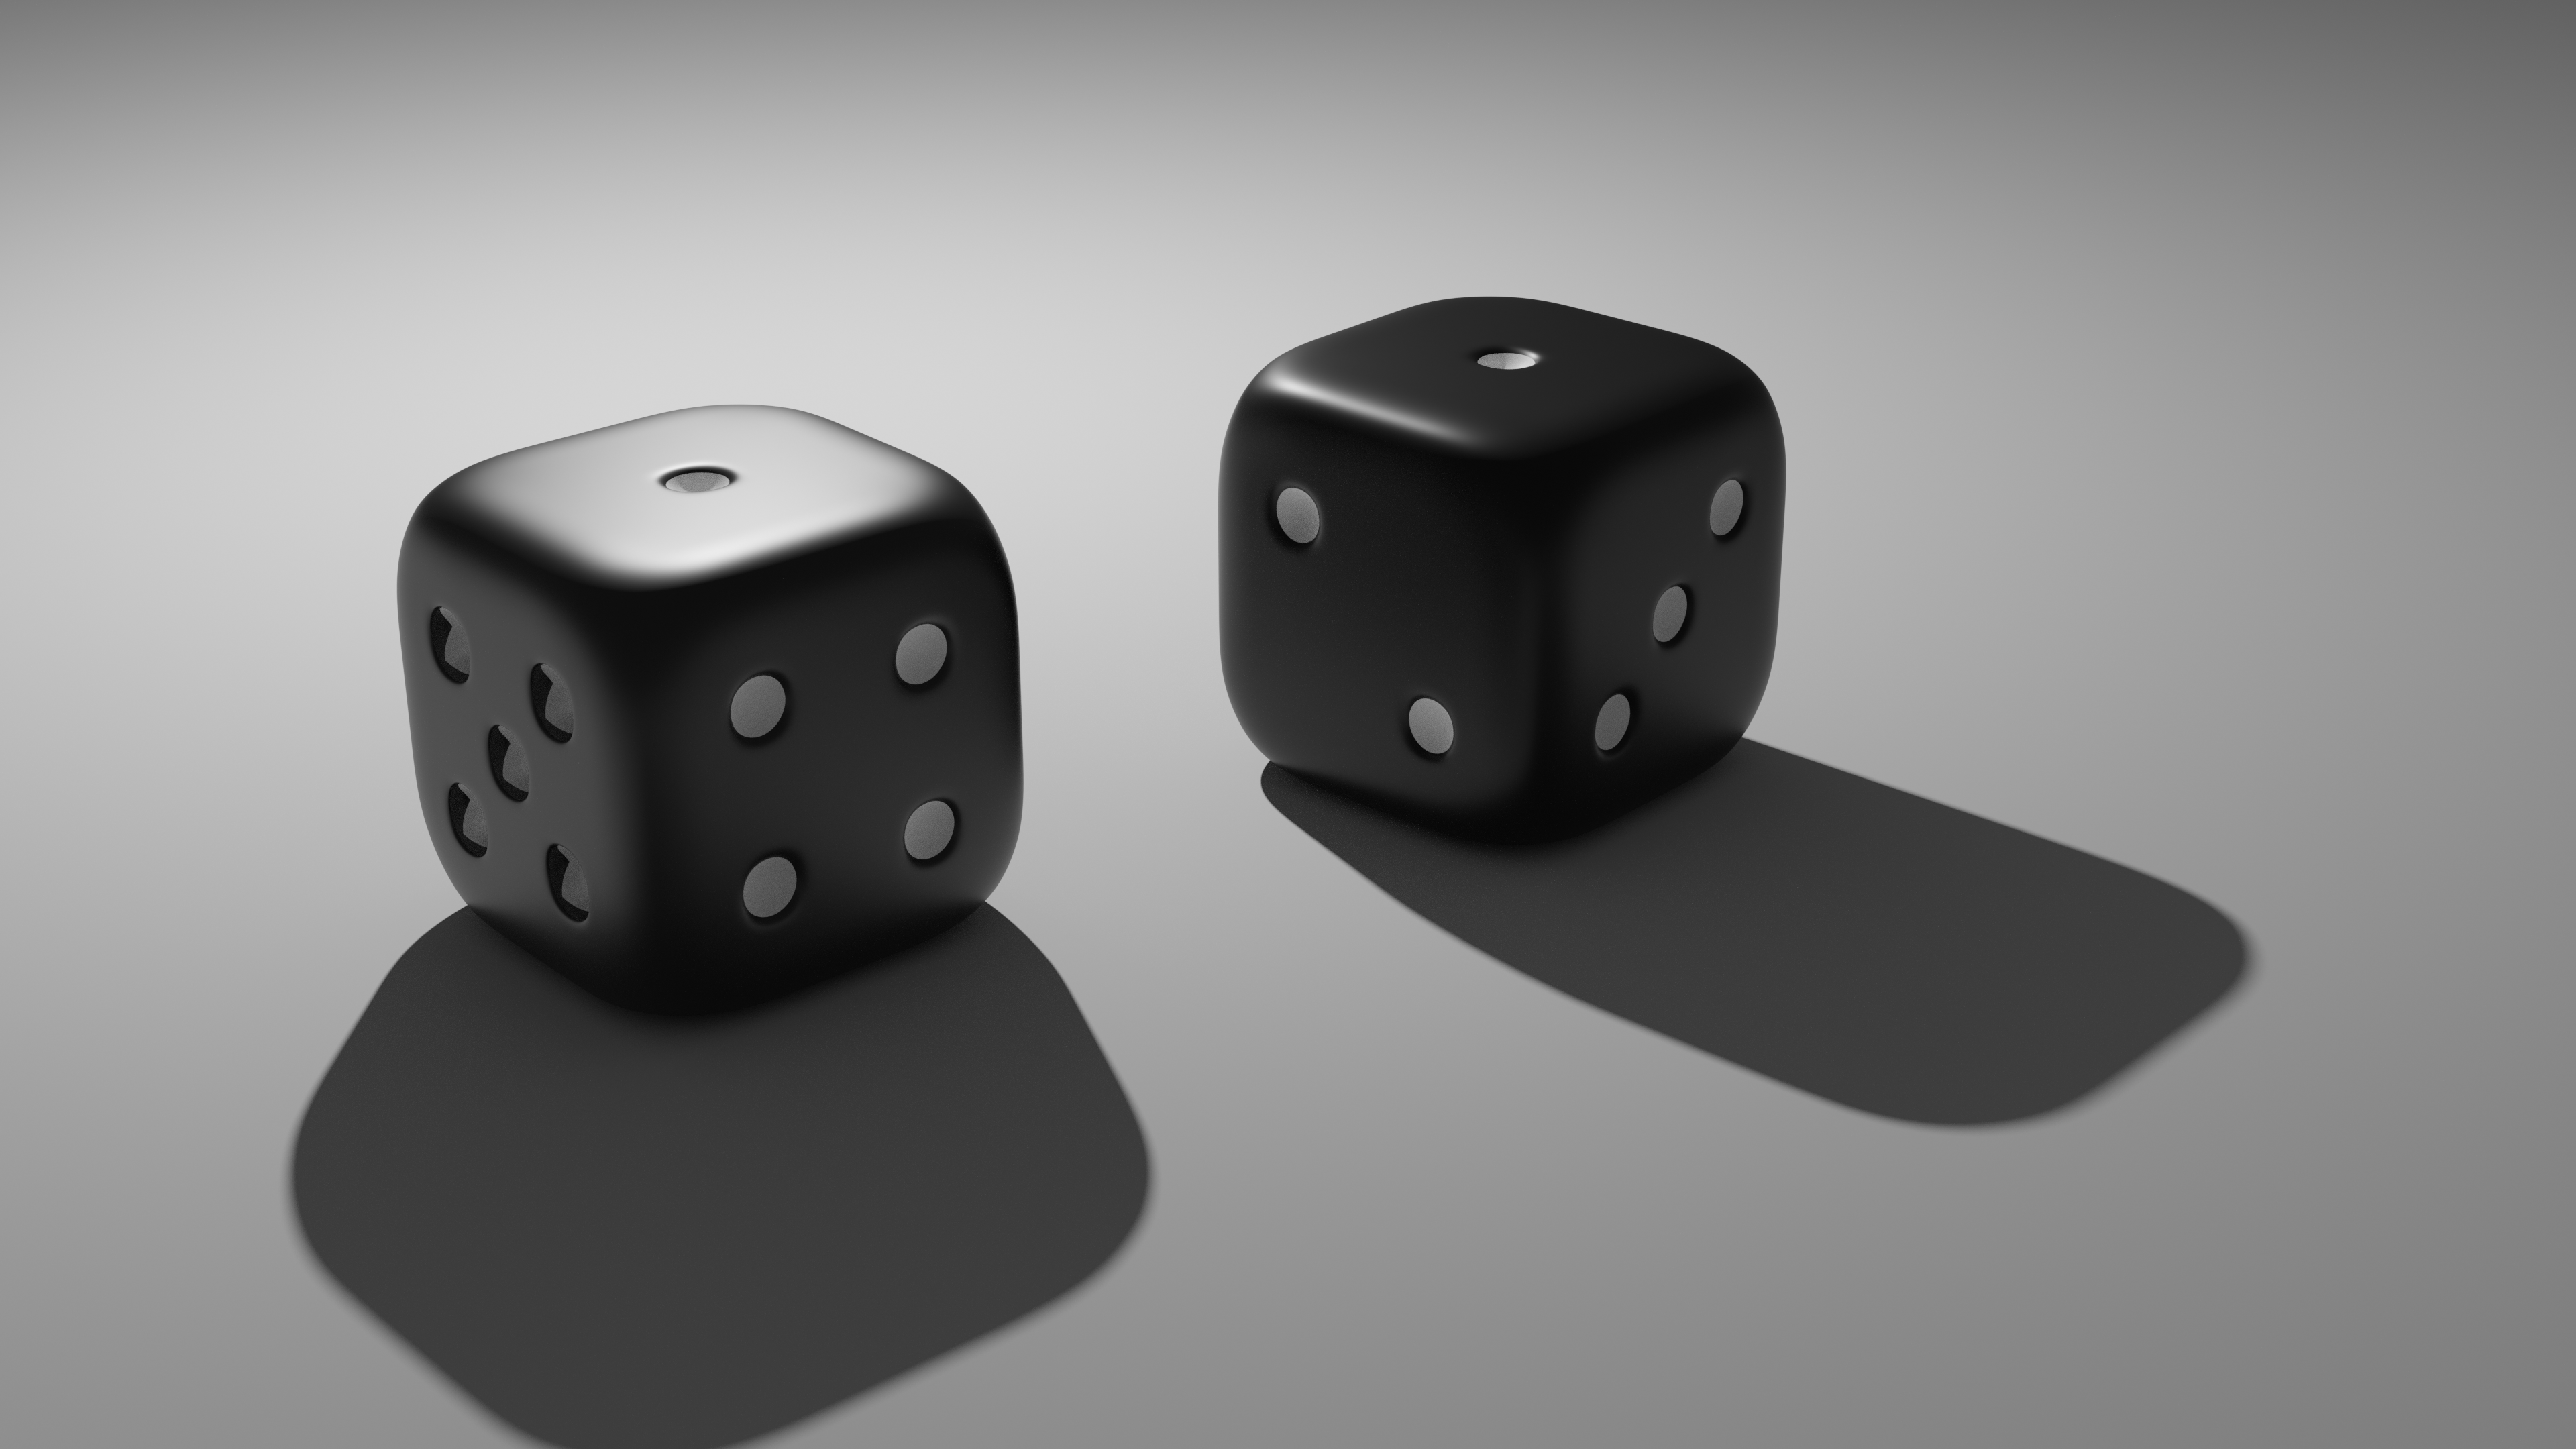 Blender Dice Simple Gambling Digital Art Simple Background Minimalism Render 3D Blocks Cube 3840x2160